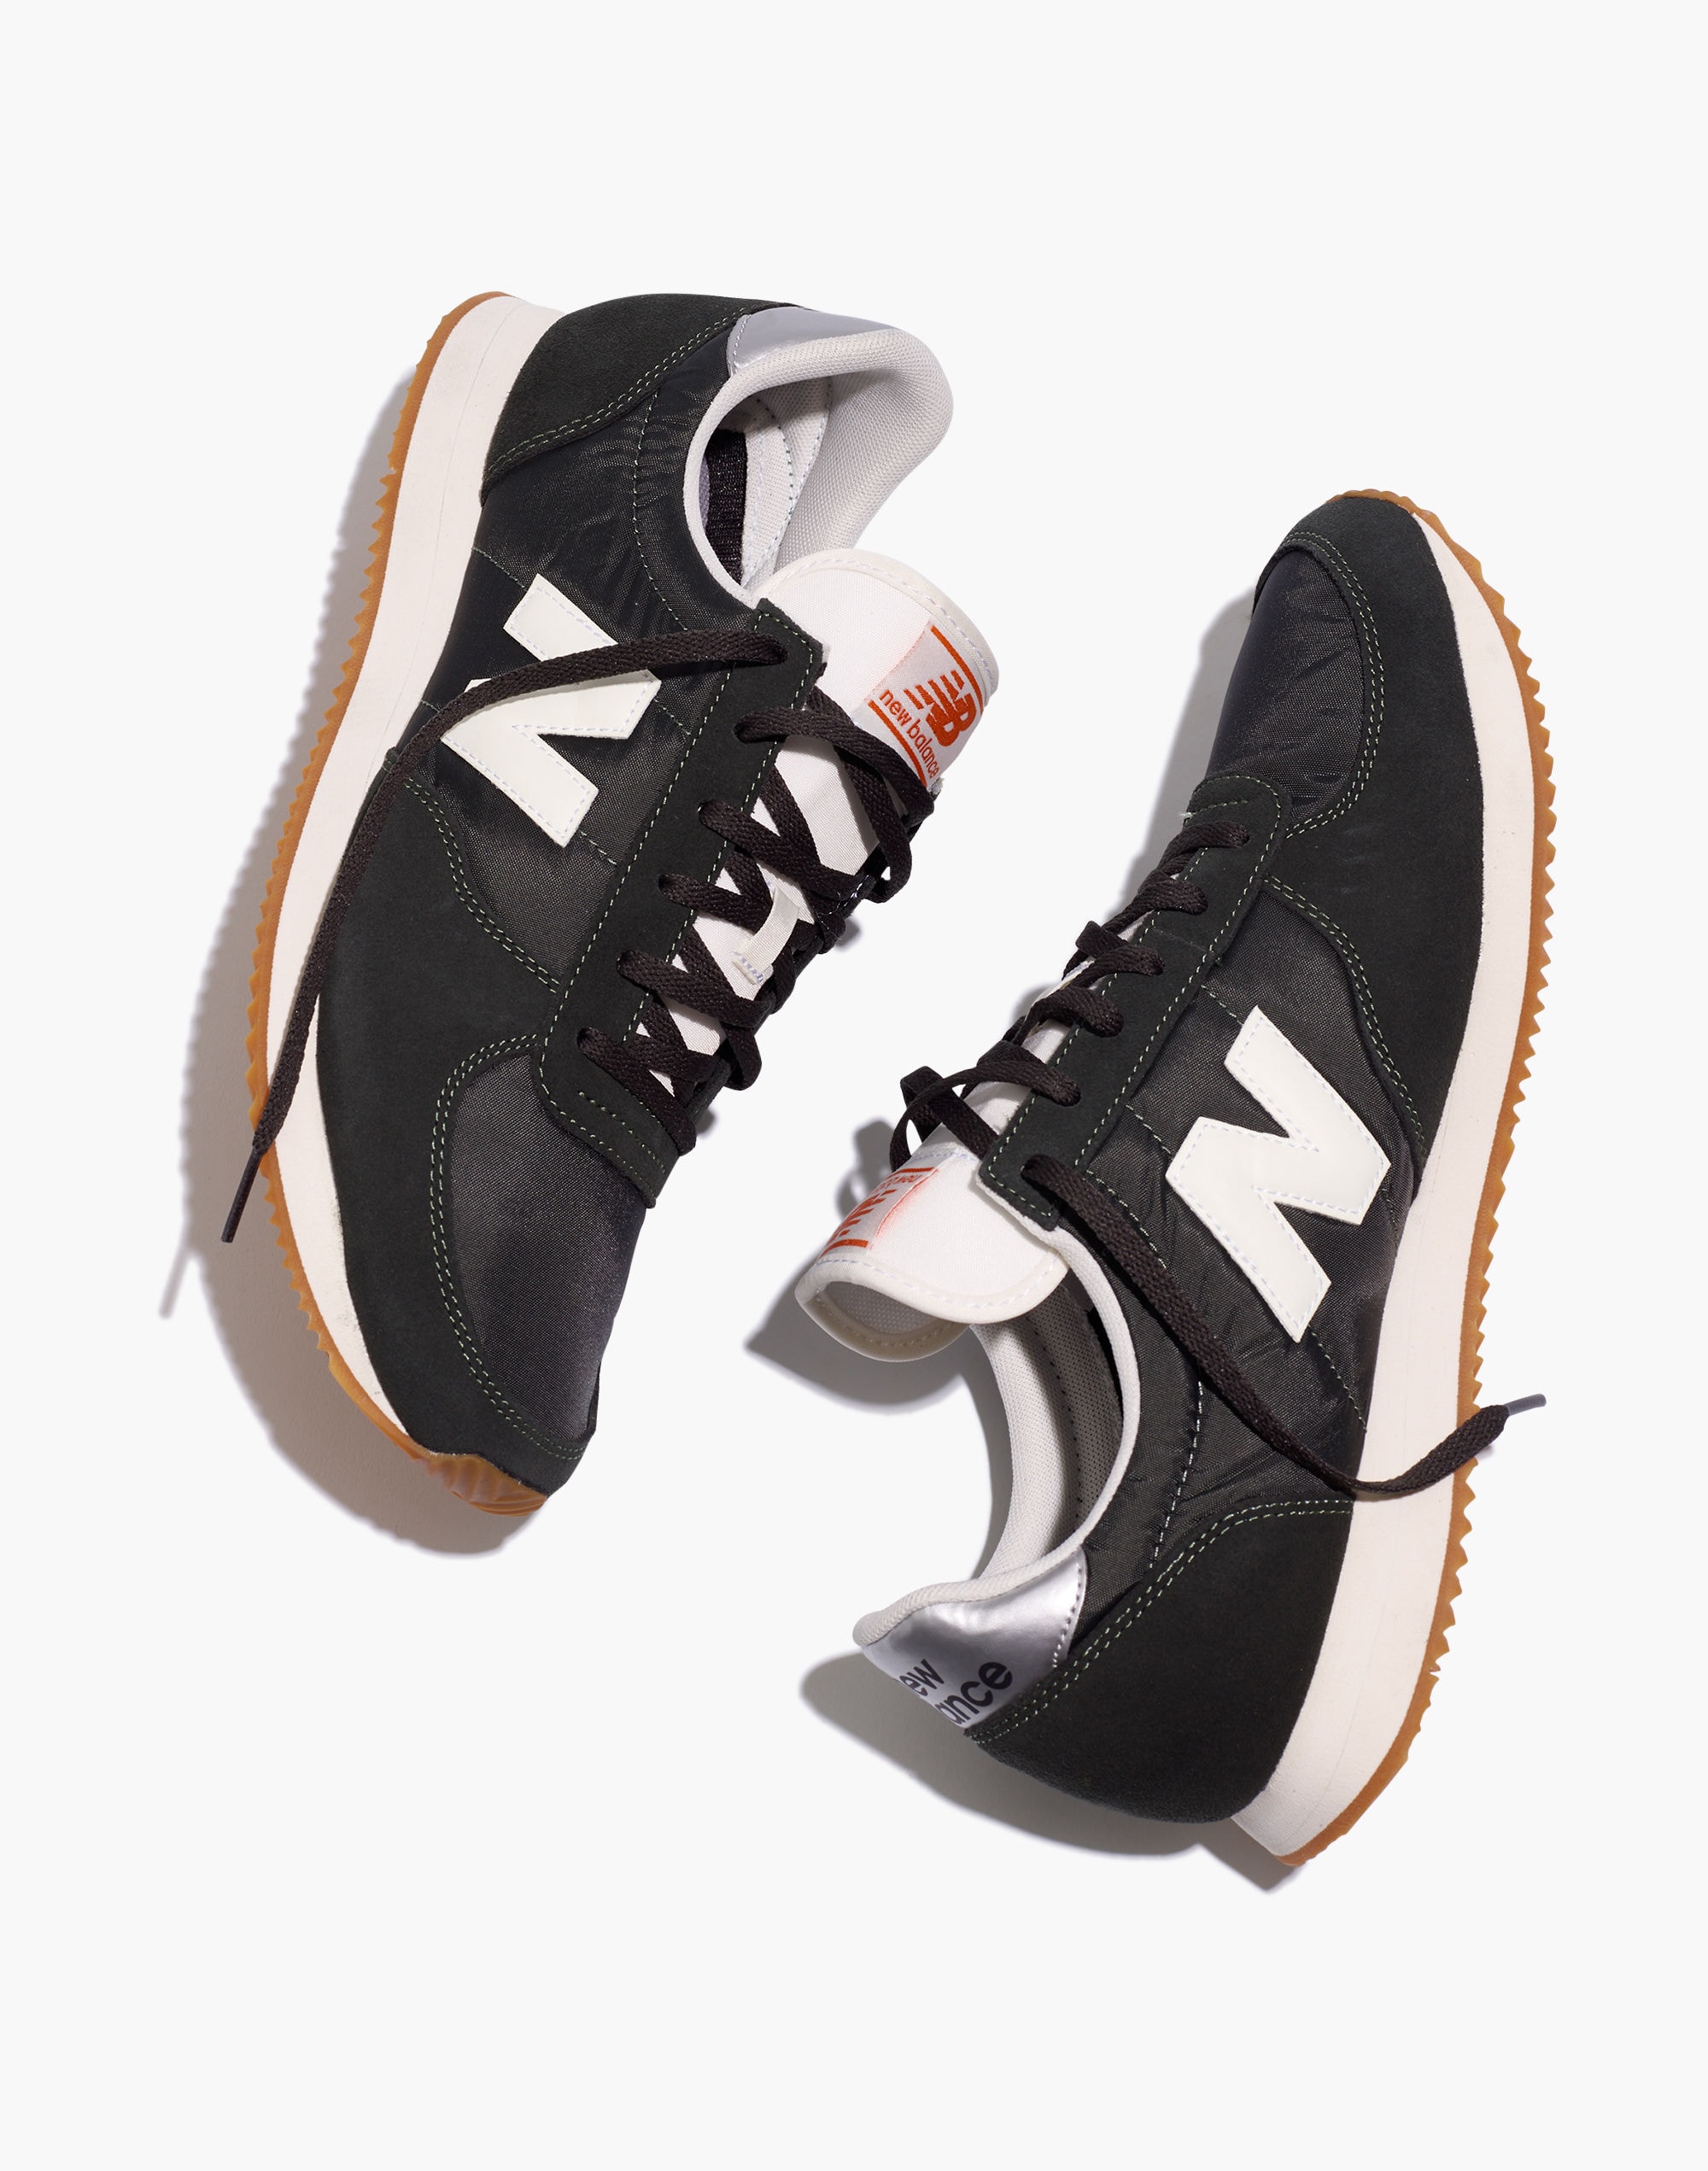 New Balance® Retro Running Sneakers